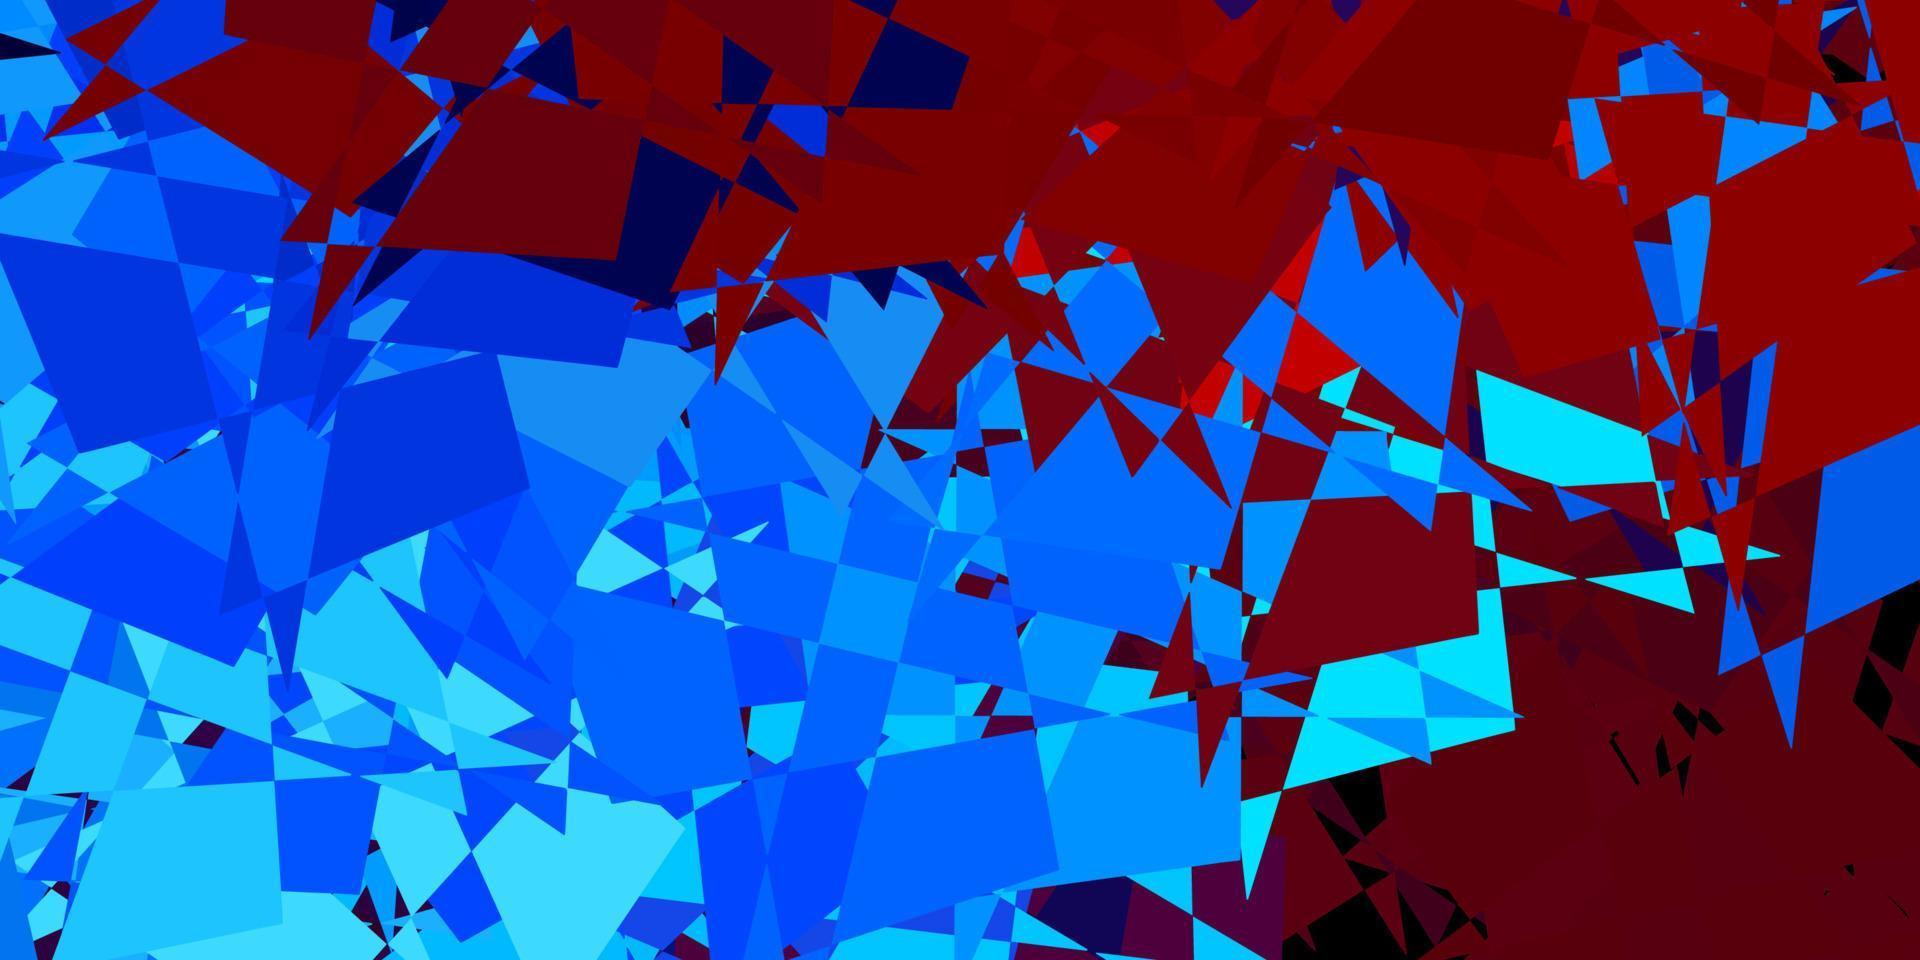 modelo de vetor azul e vermelho claro com formas abstratas.